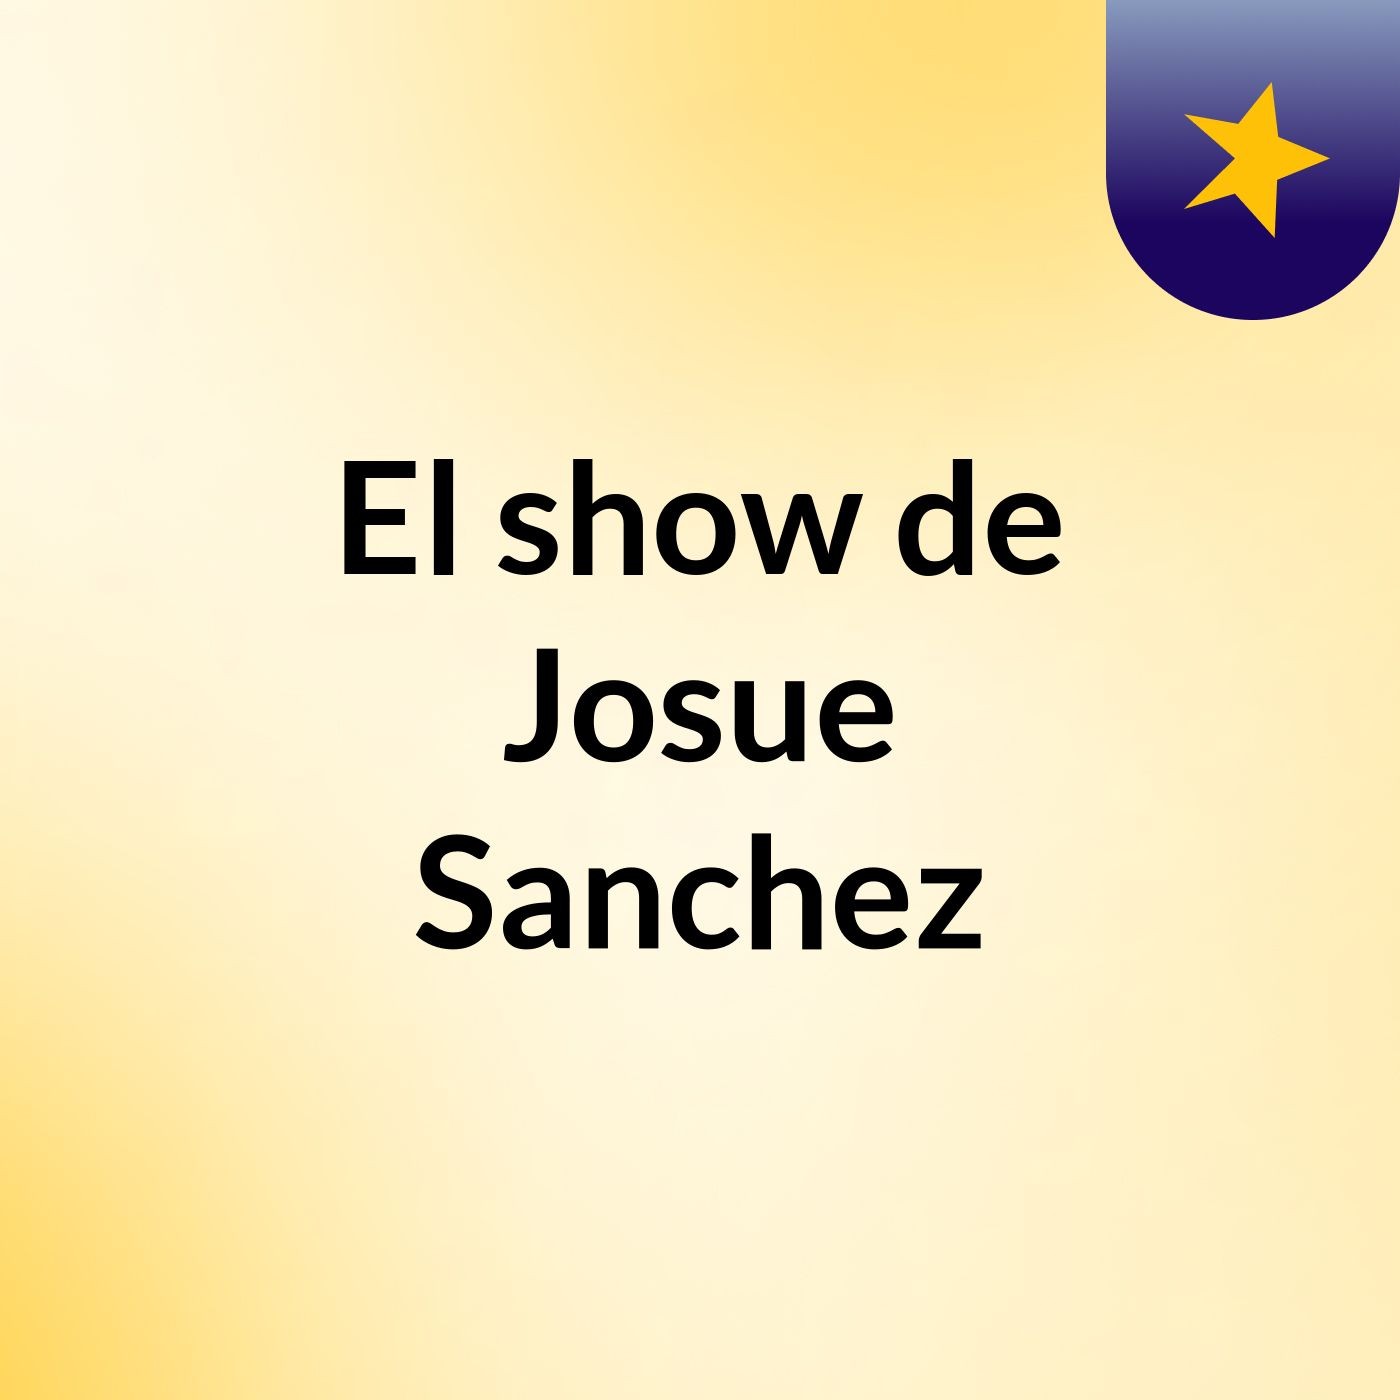 El show de Josue Sanchez